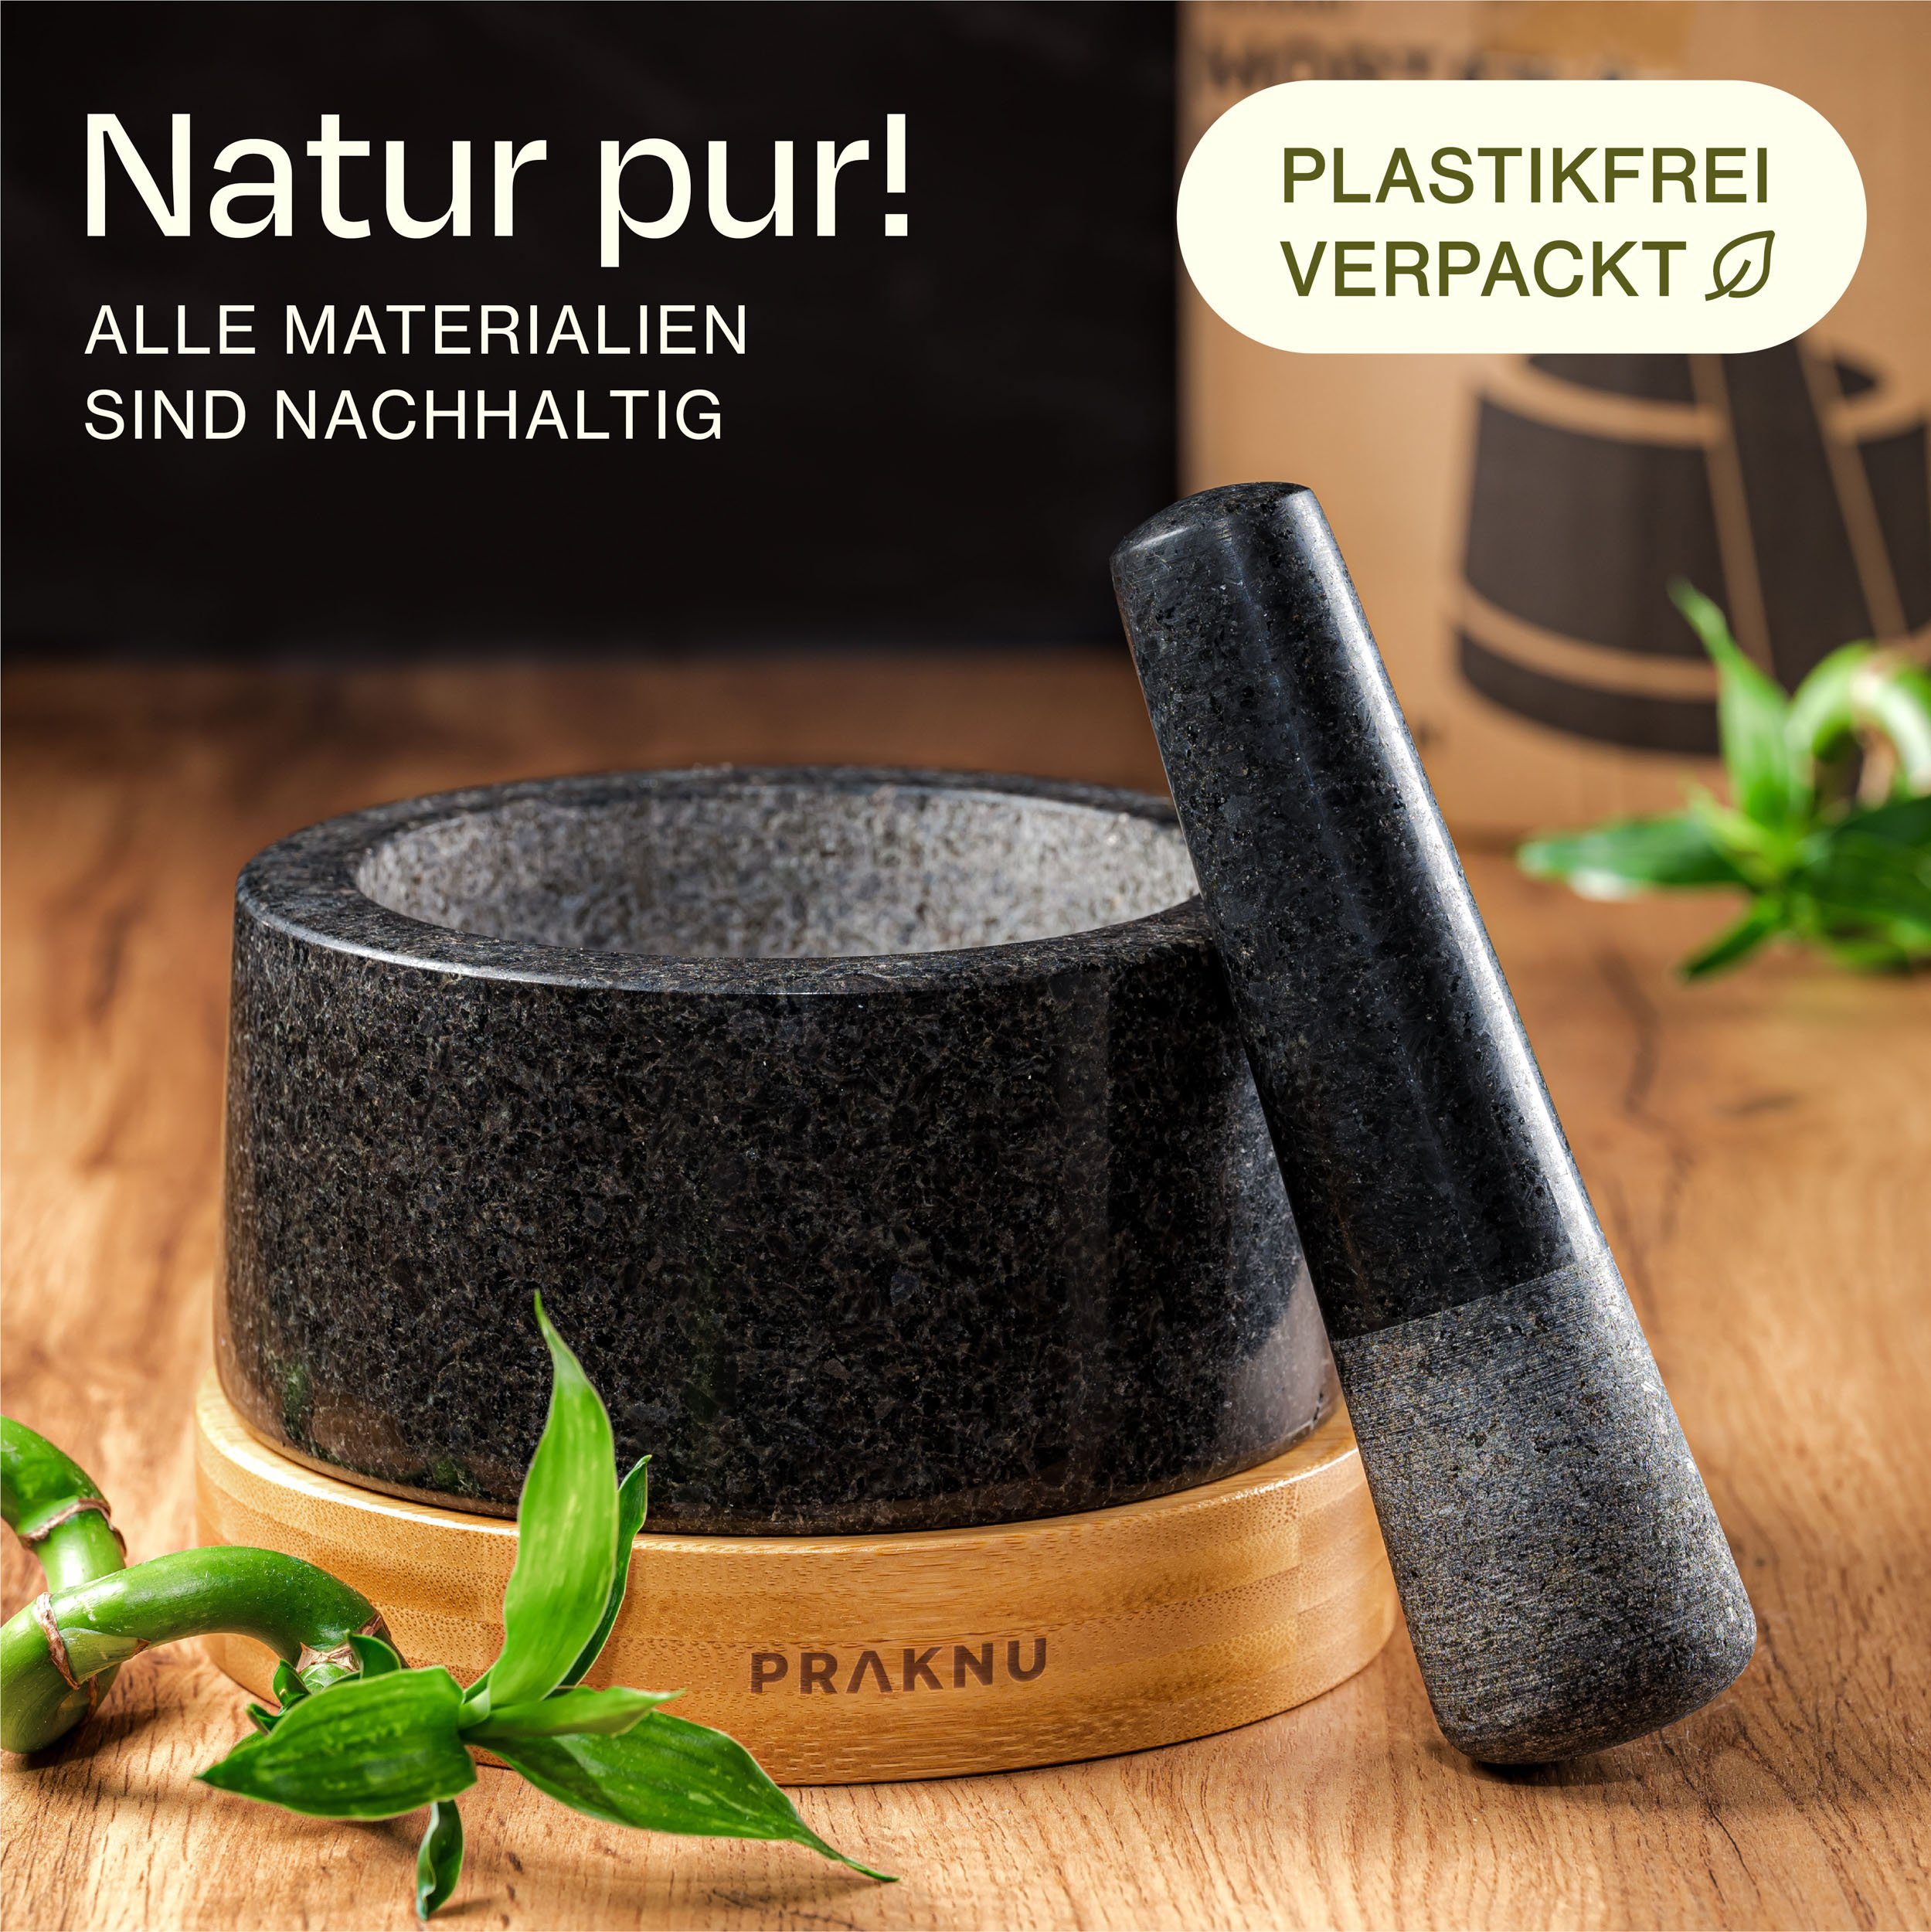 Mahlergebnis Untersetzer ein Stößel Verpackung, Reinigen - zu aus Für - Plastikfreie feines nachhaltigem Mörser Groß - Granit Praknu und FSC Leicht Holz